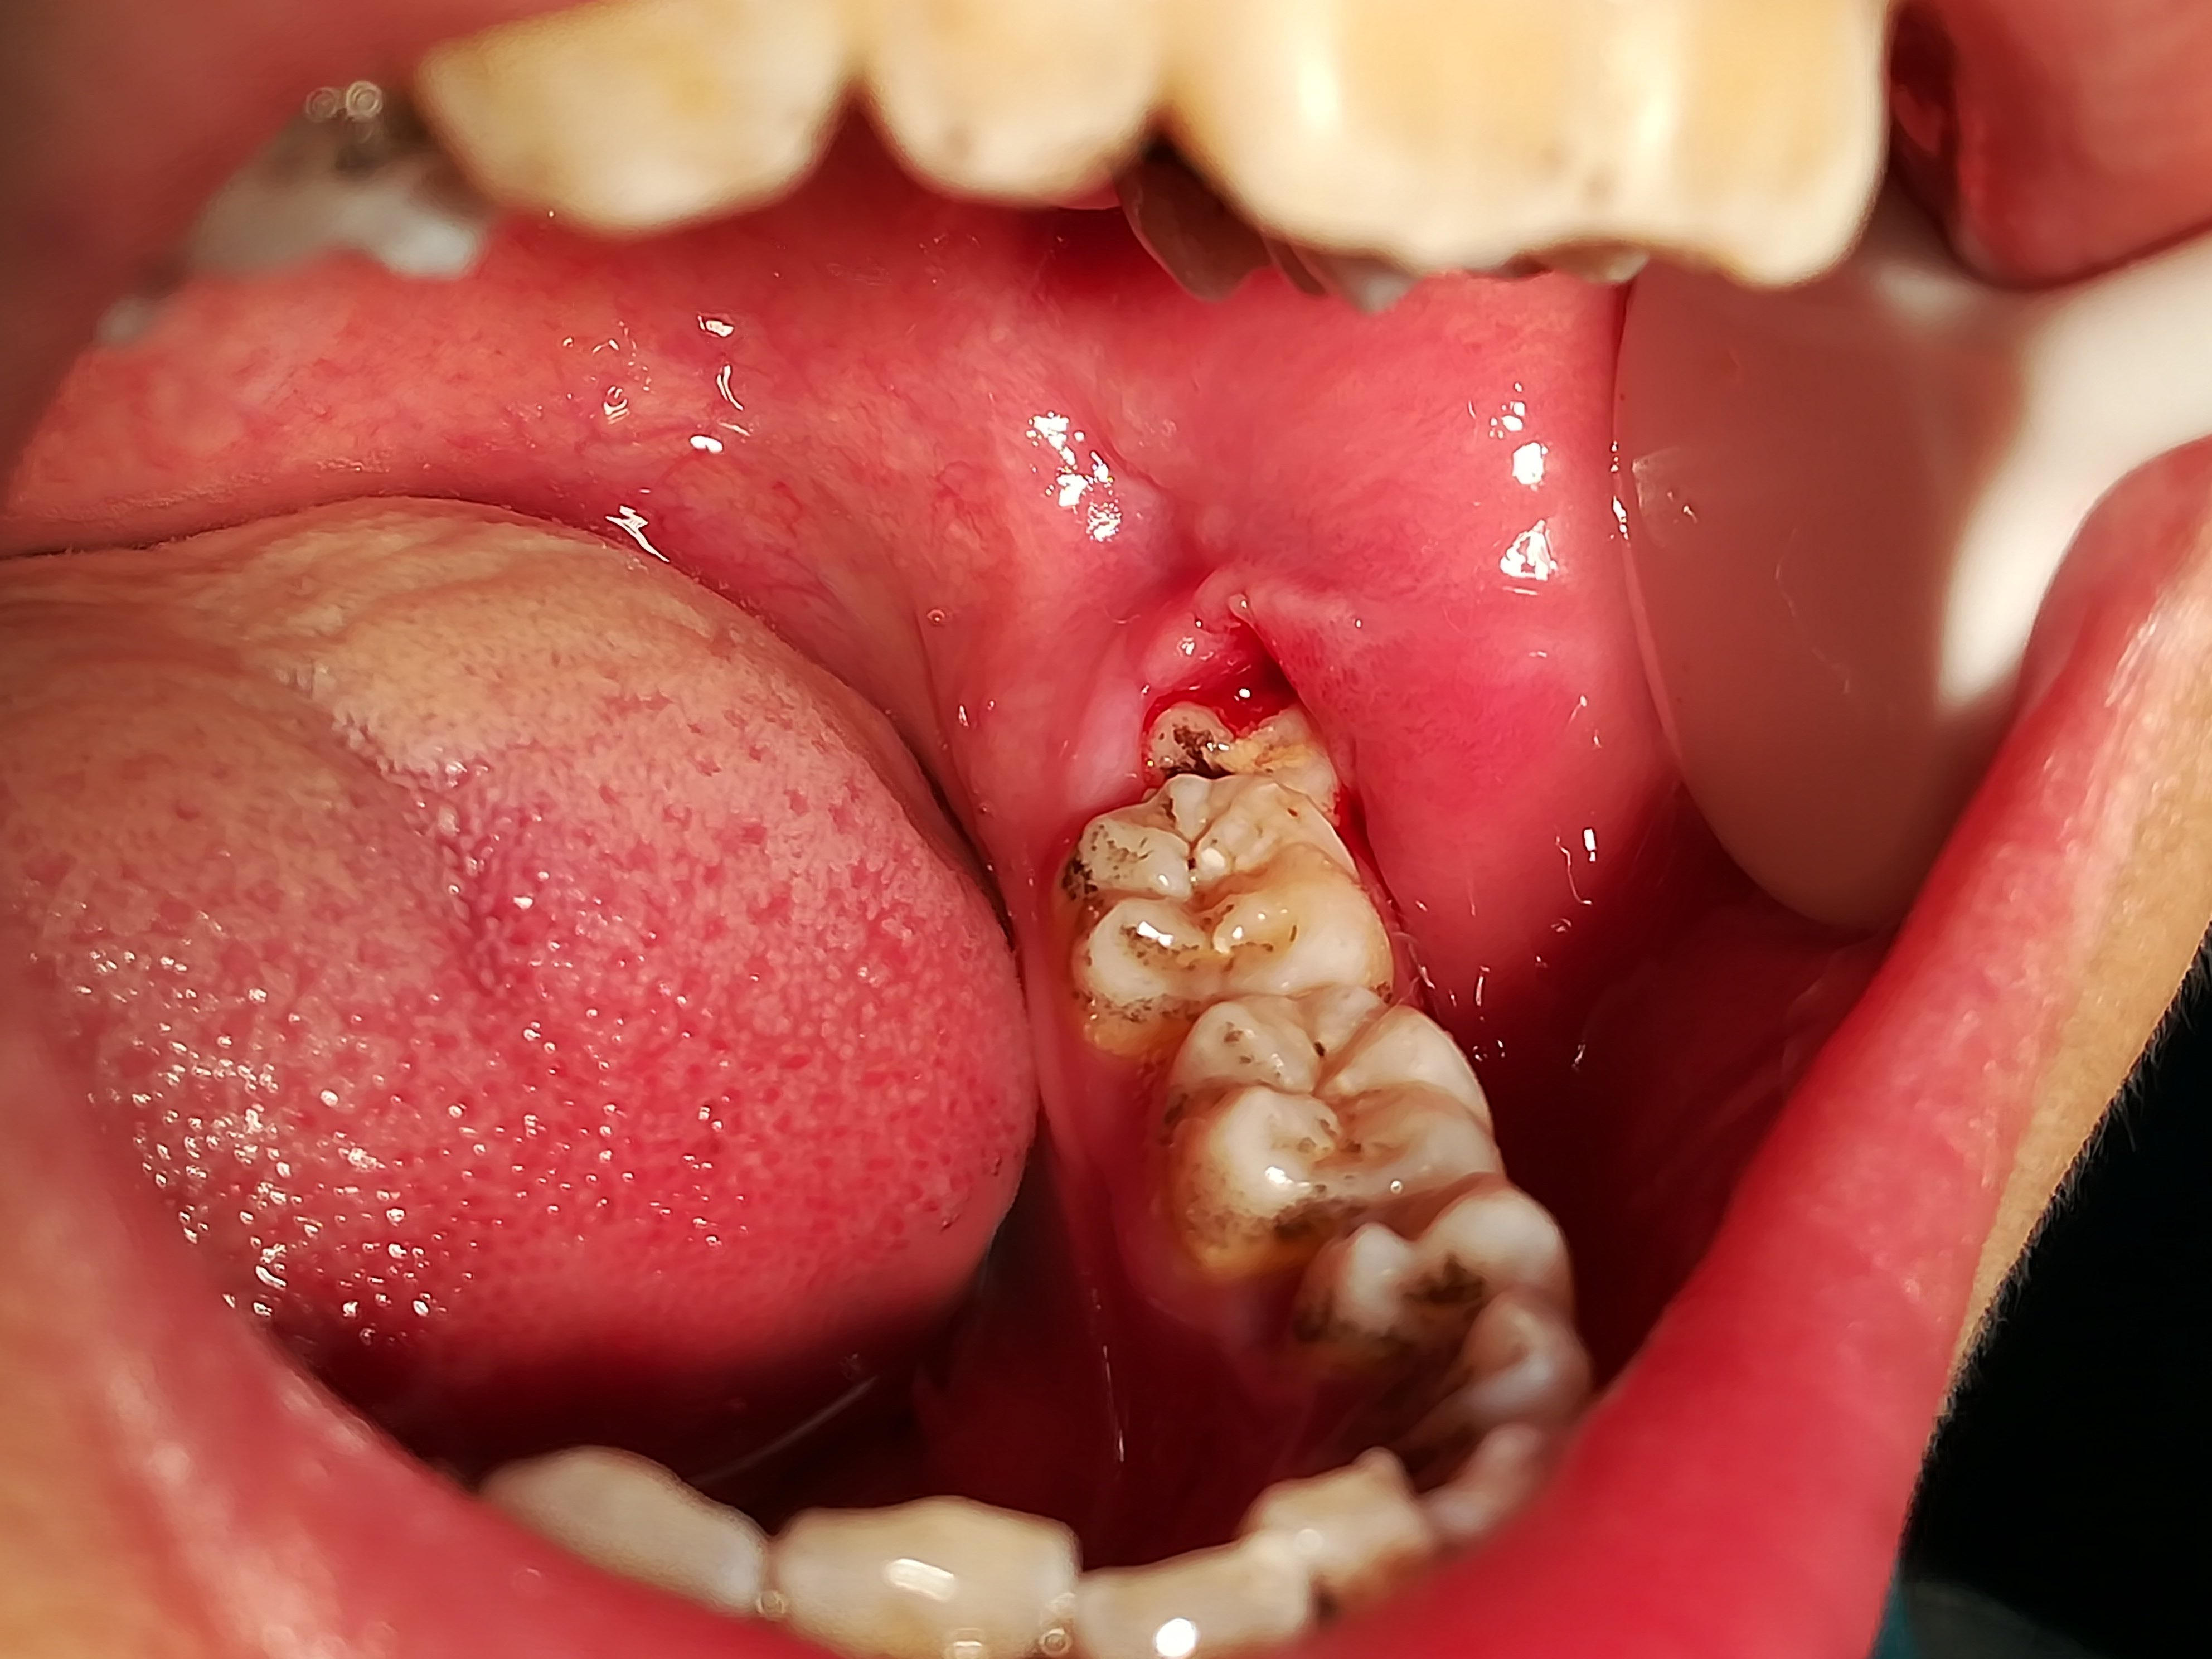 5.智齿发生蛀牙 智齿因为位于最后方,刷牙经常被忽略,容易长蛀牙.